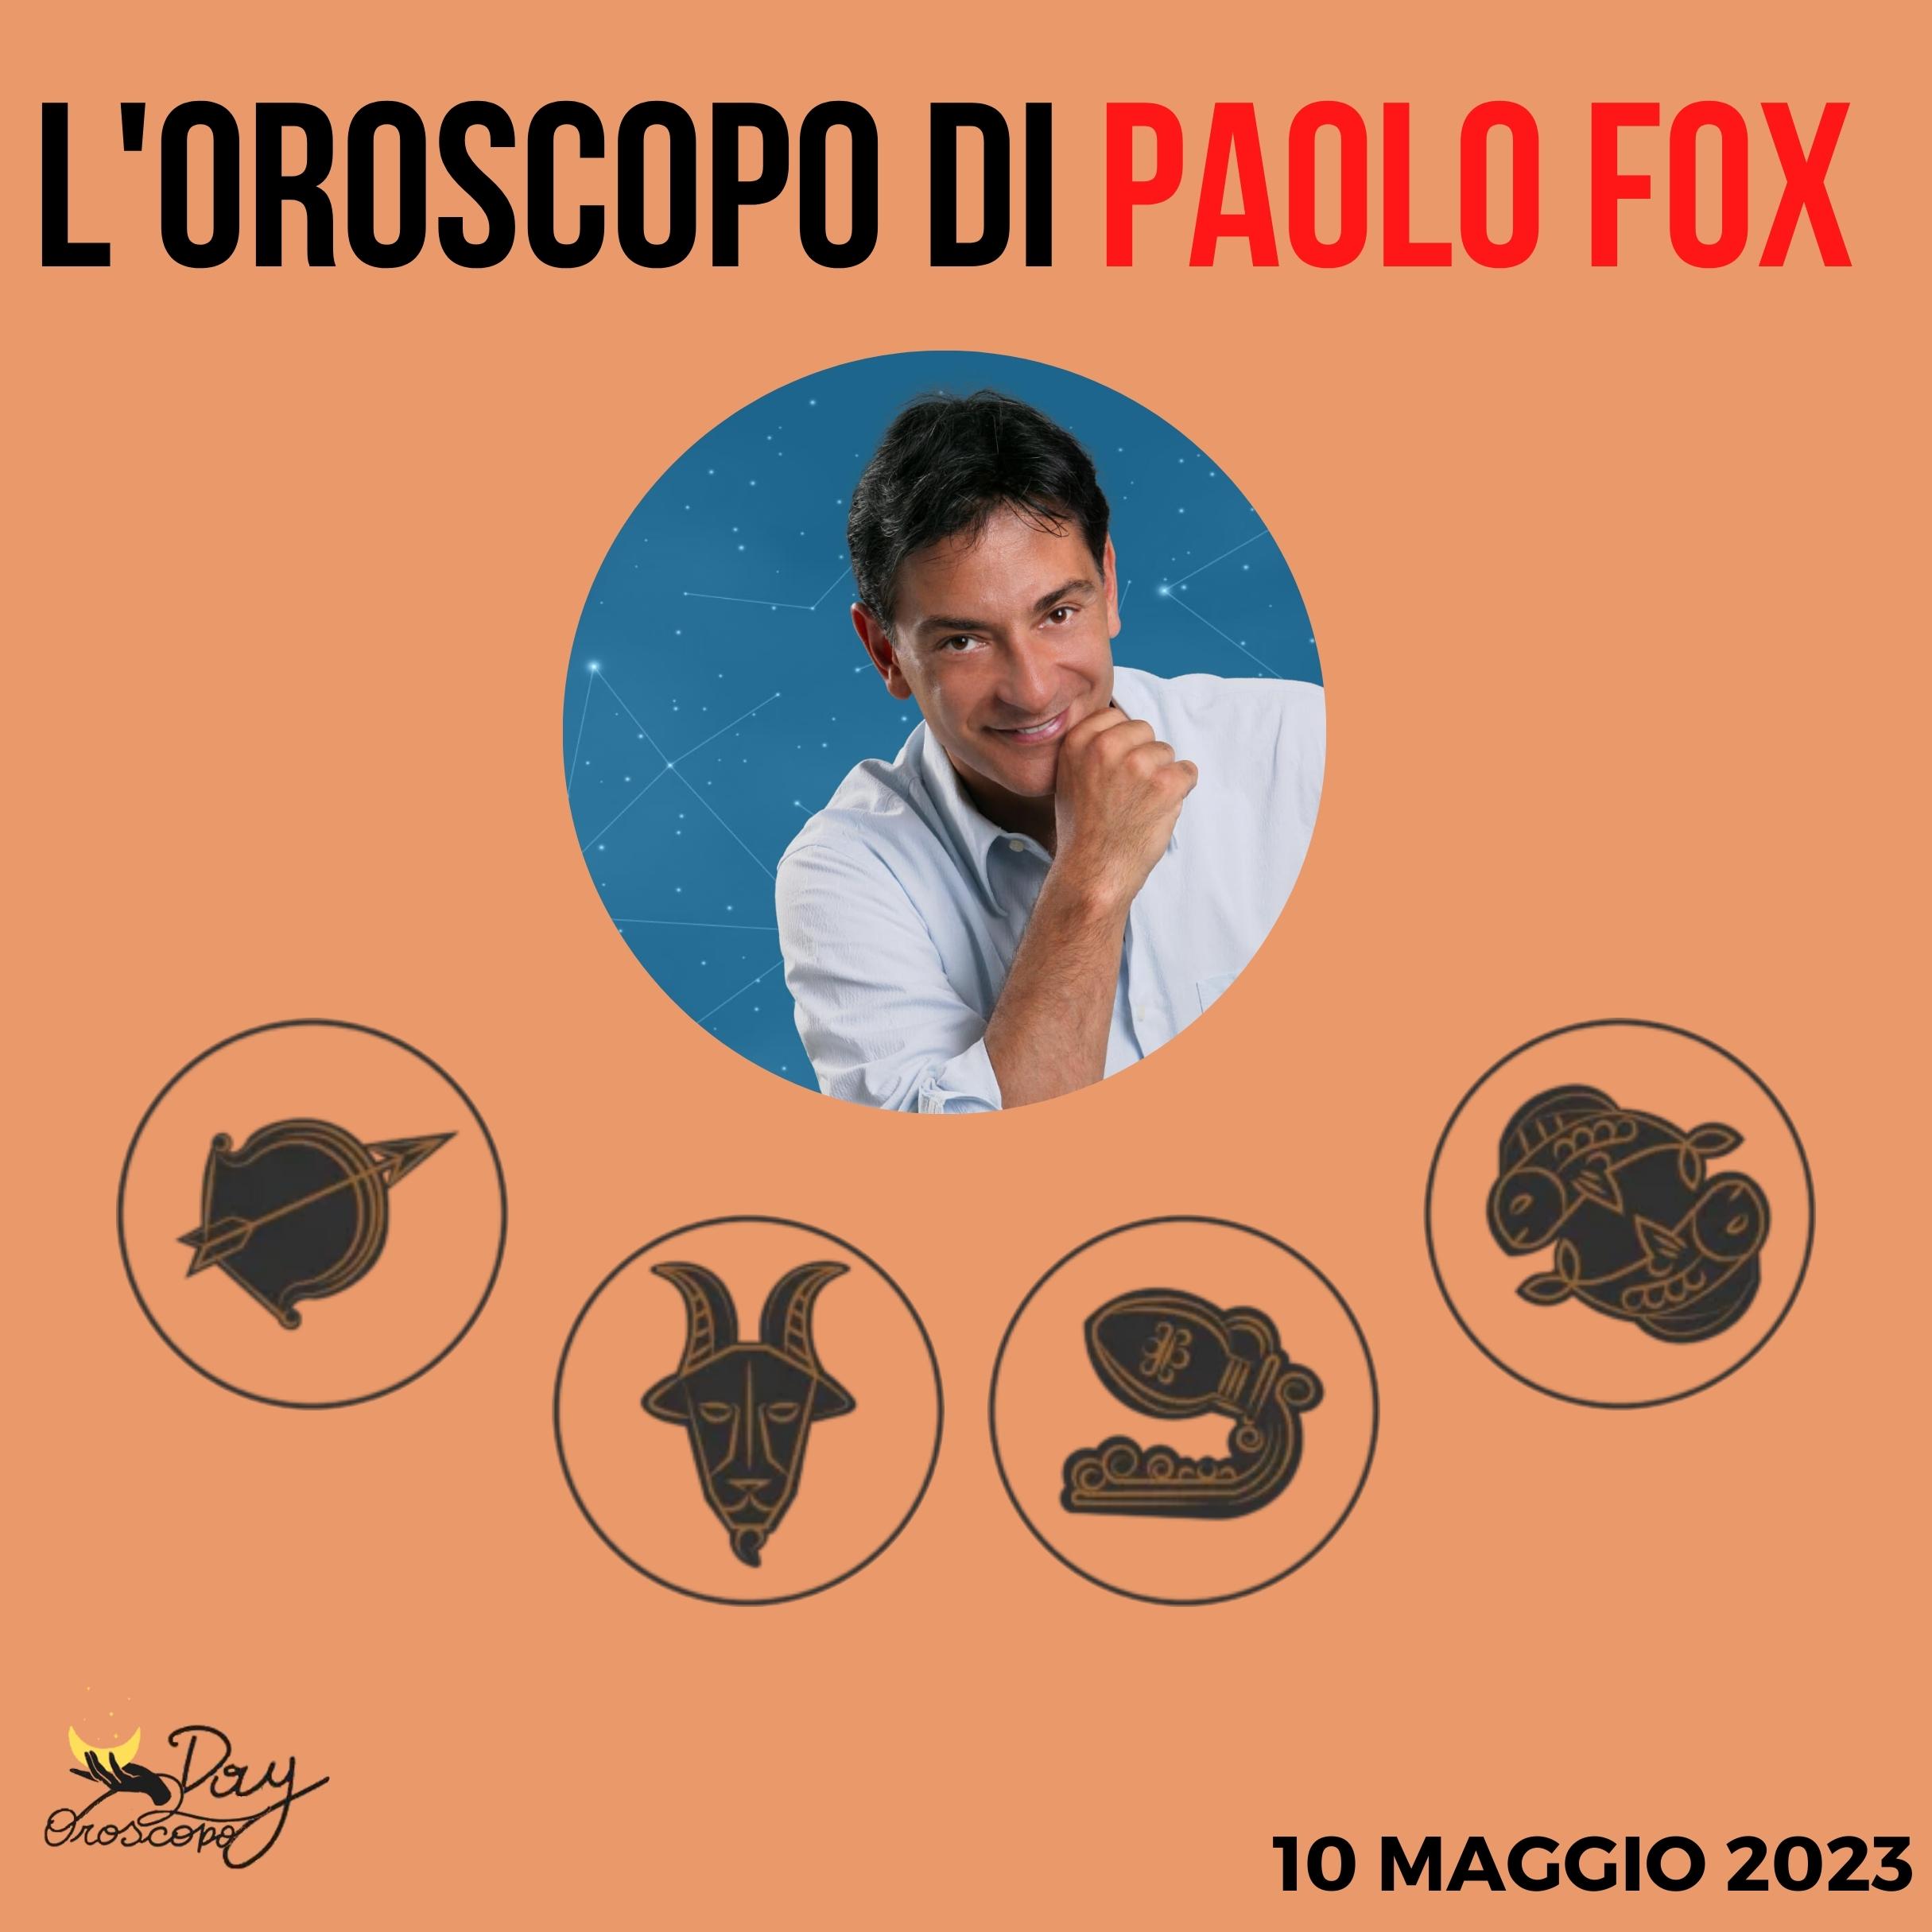 Oroscopo oggi domani Paolo Fox 10 maggio Sagittario Capricorno Acquario Pesci